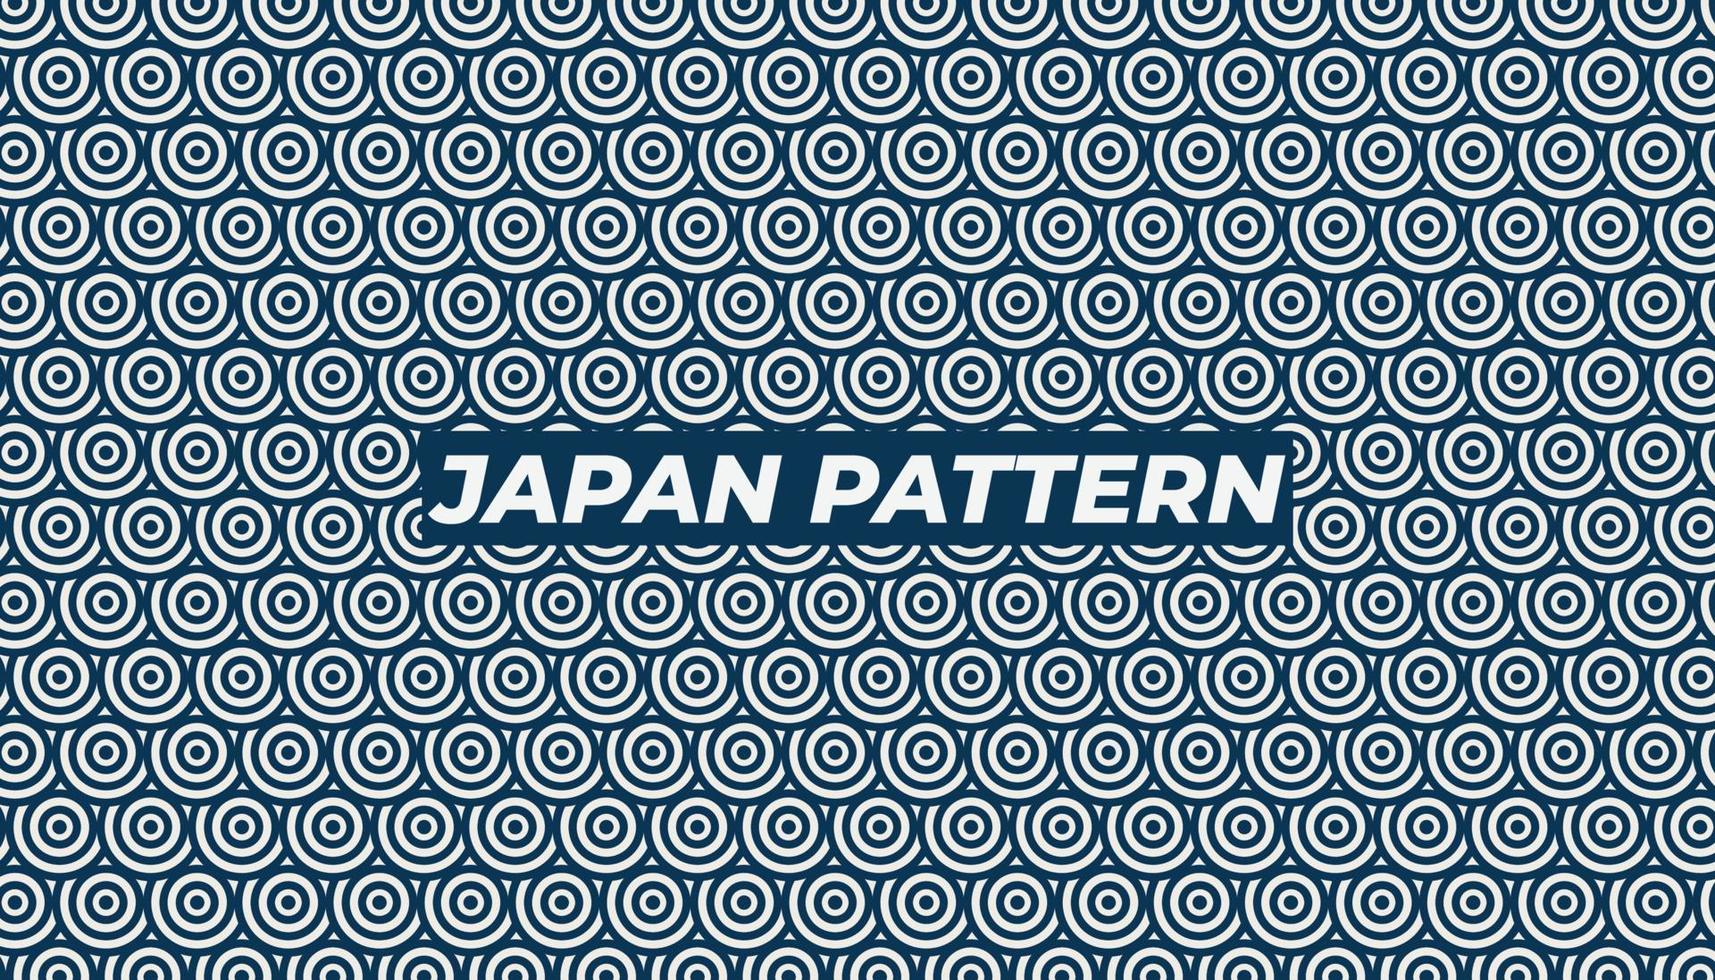 illustratie achtergrond japan patroon blauwe kleur vector